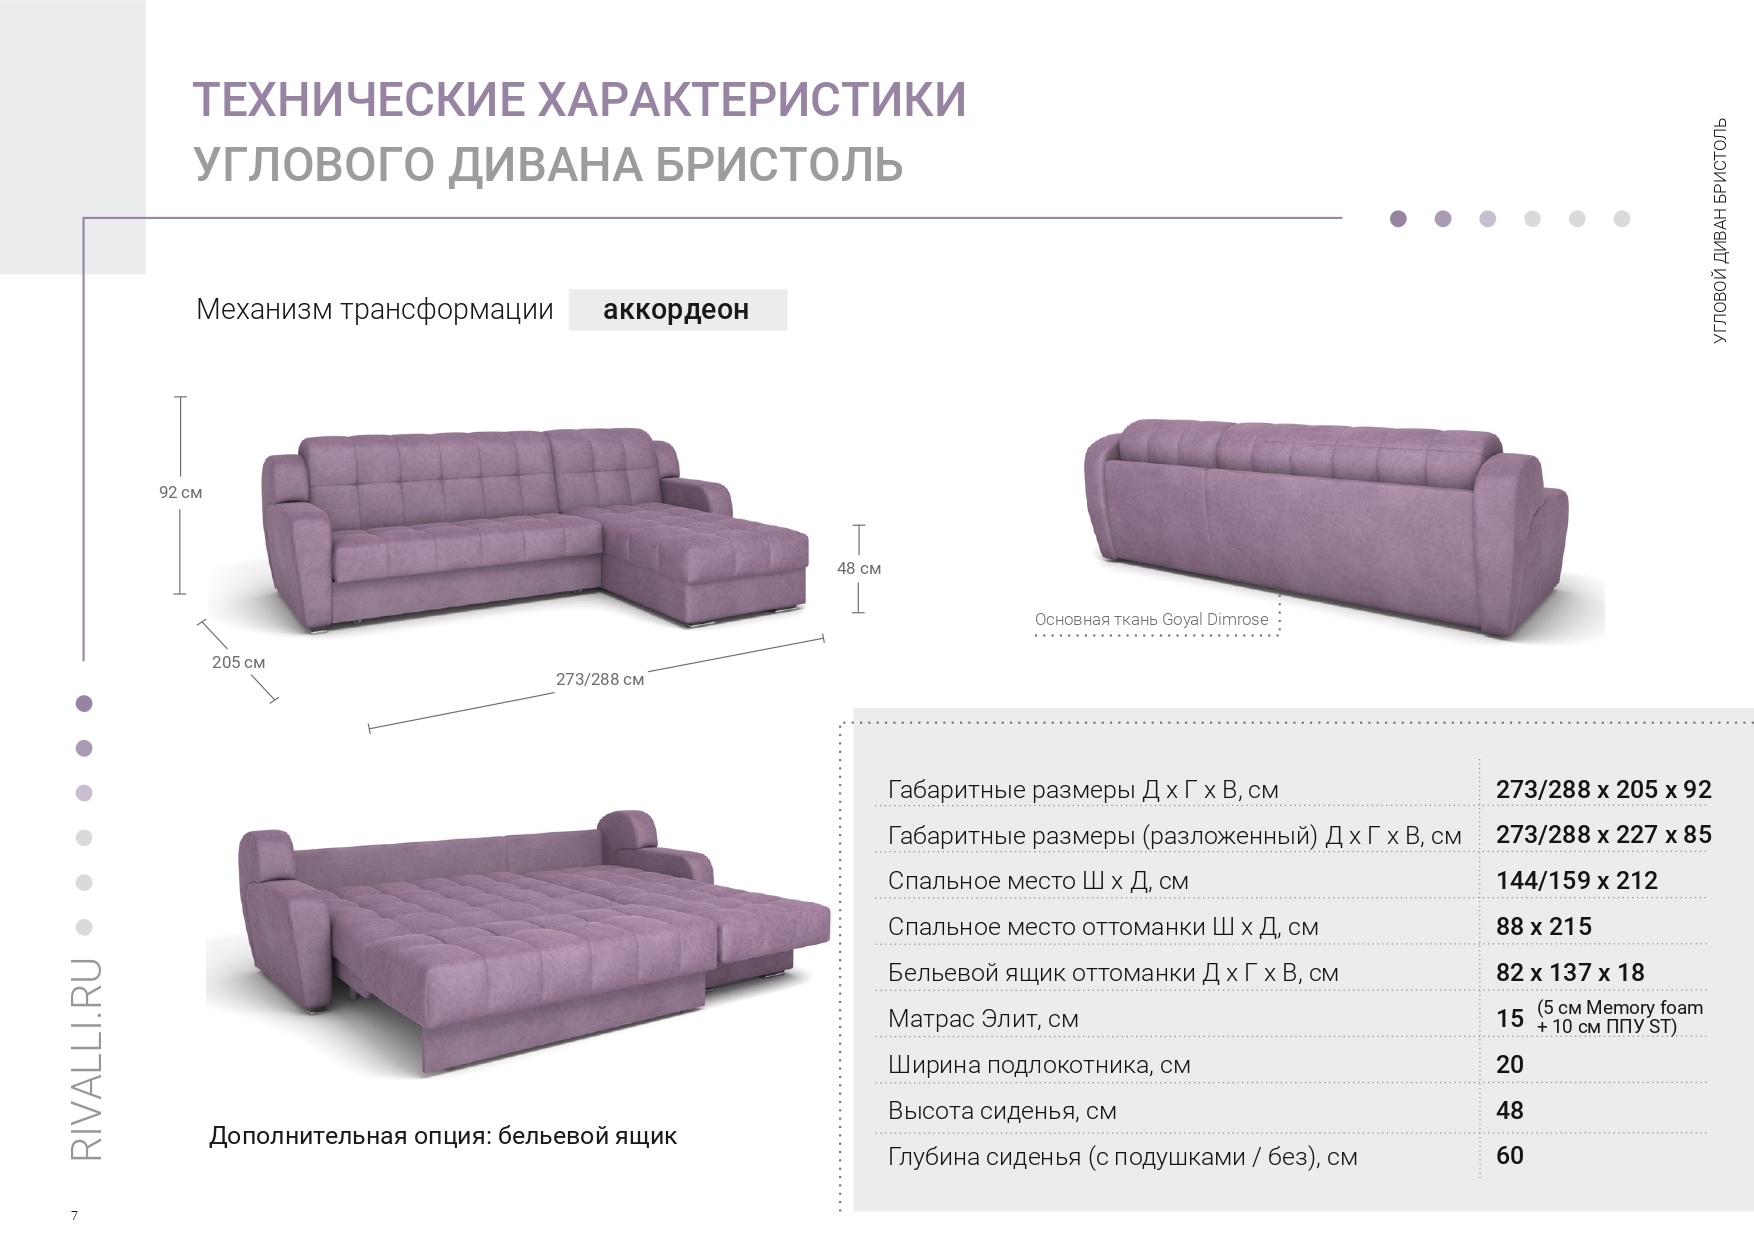 СТАЛМОТ механизмы трансформации дивана с оттоманкой